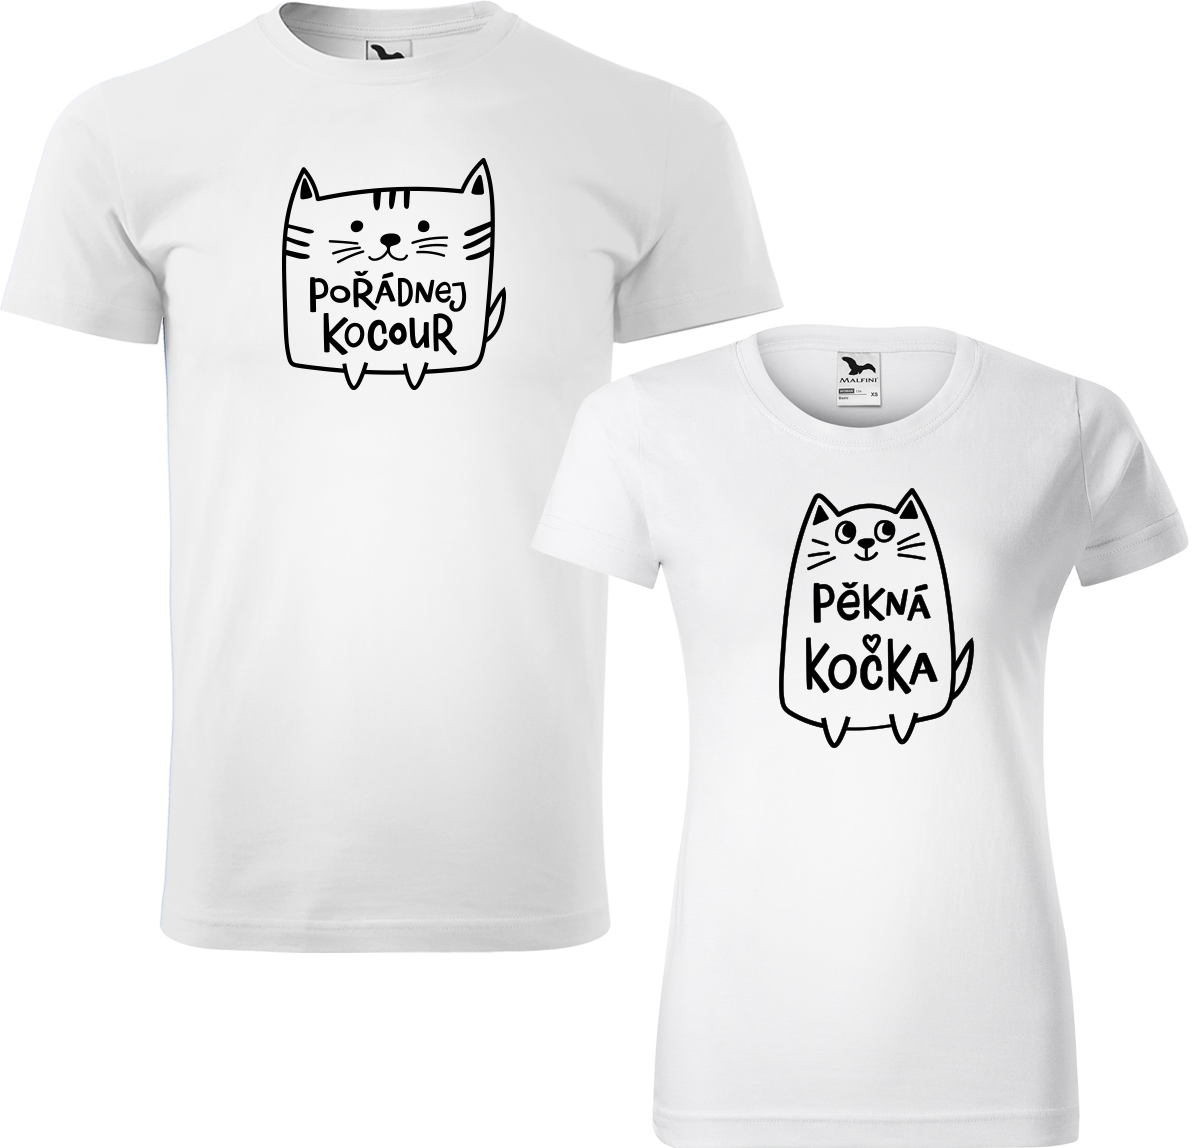 Trička pro páry - Pořádnej kocour a pěkná kočka Barva: Bílá (00), Velikost dámské tričko: L, Velikost pánské tričko: L